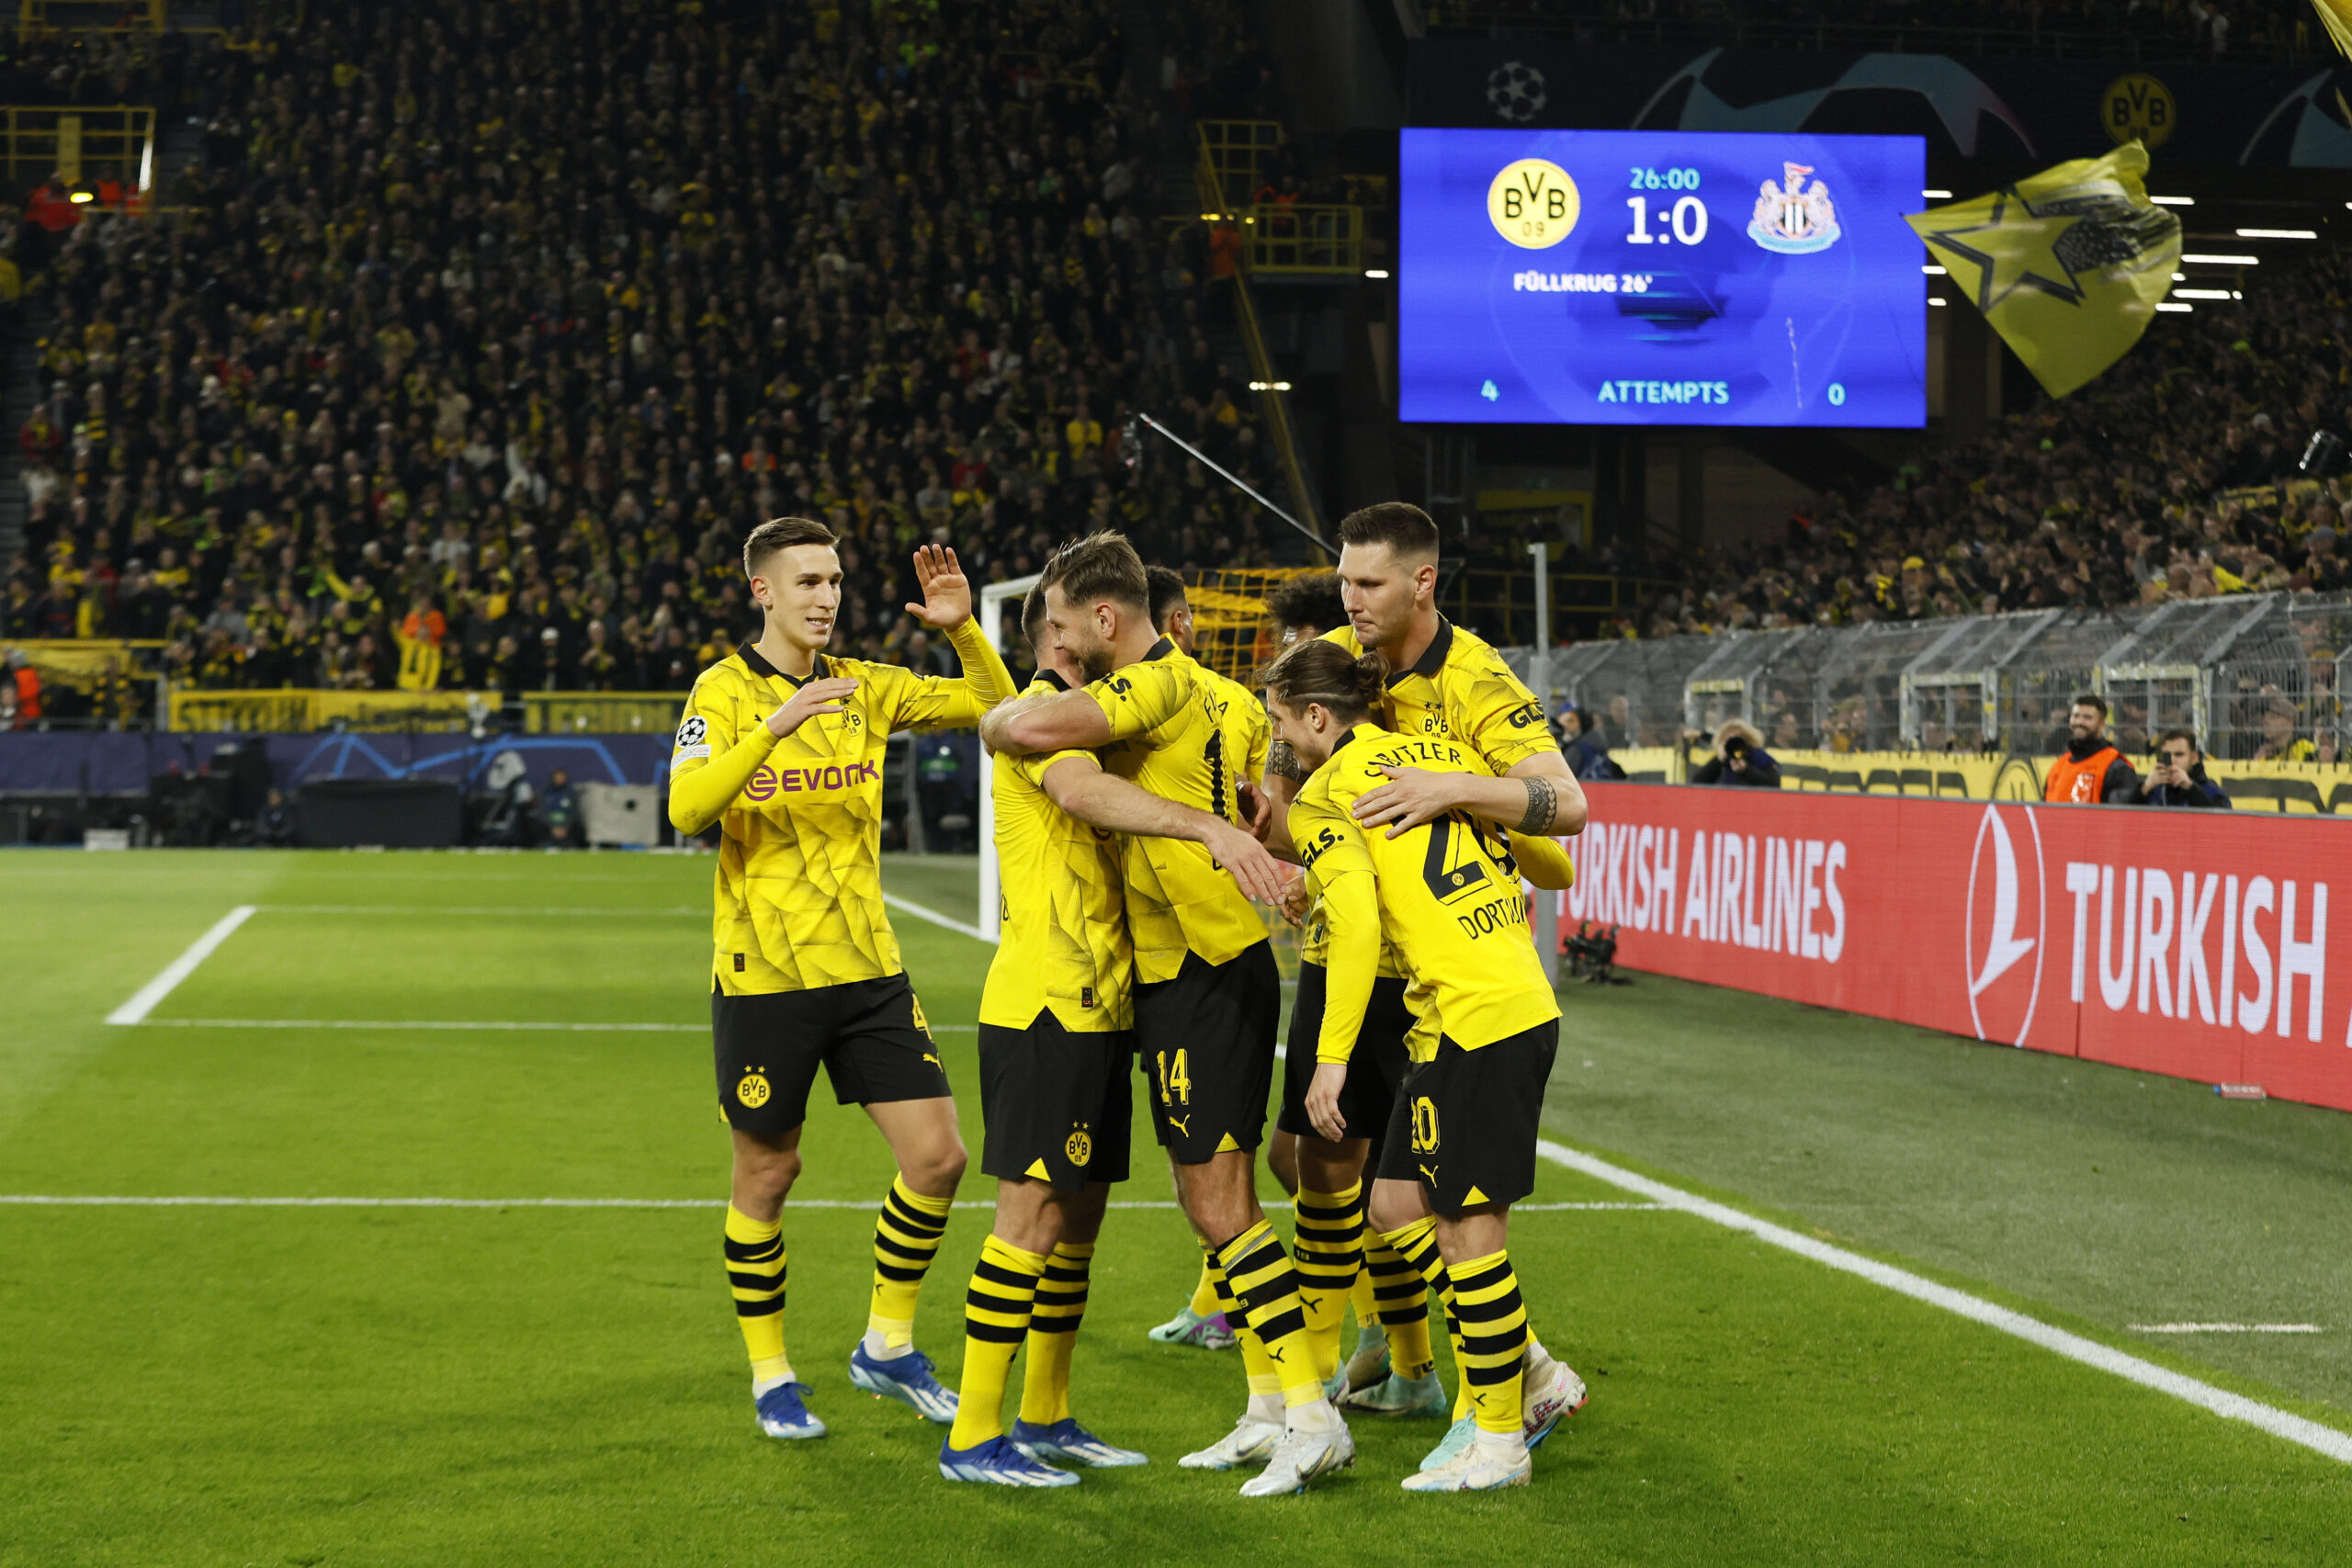 VfB Stuttgart – Borussia Dortmund typy i kursy bukmacherskie